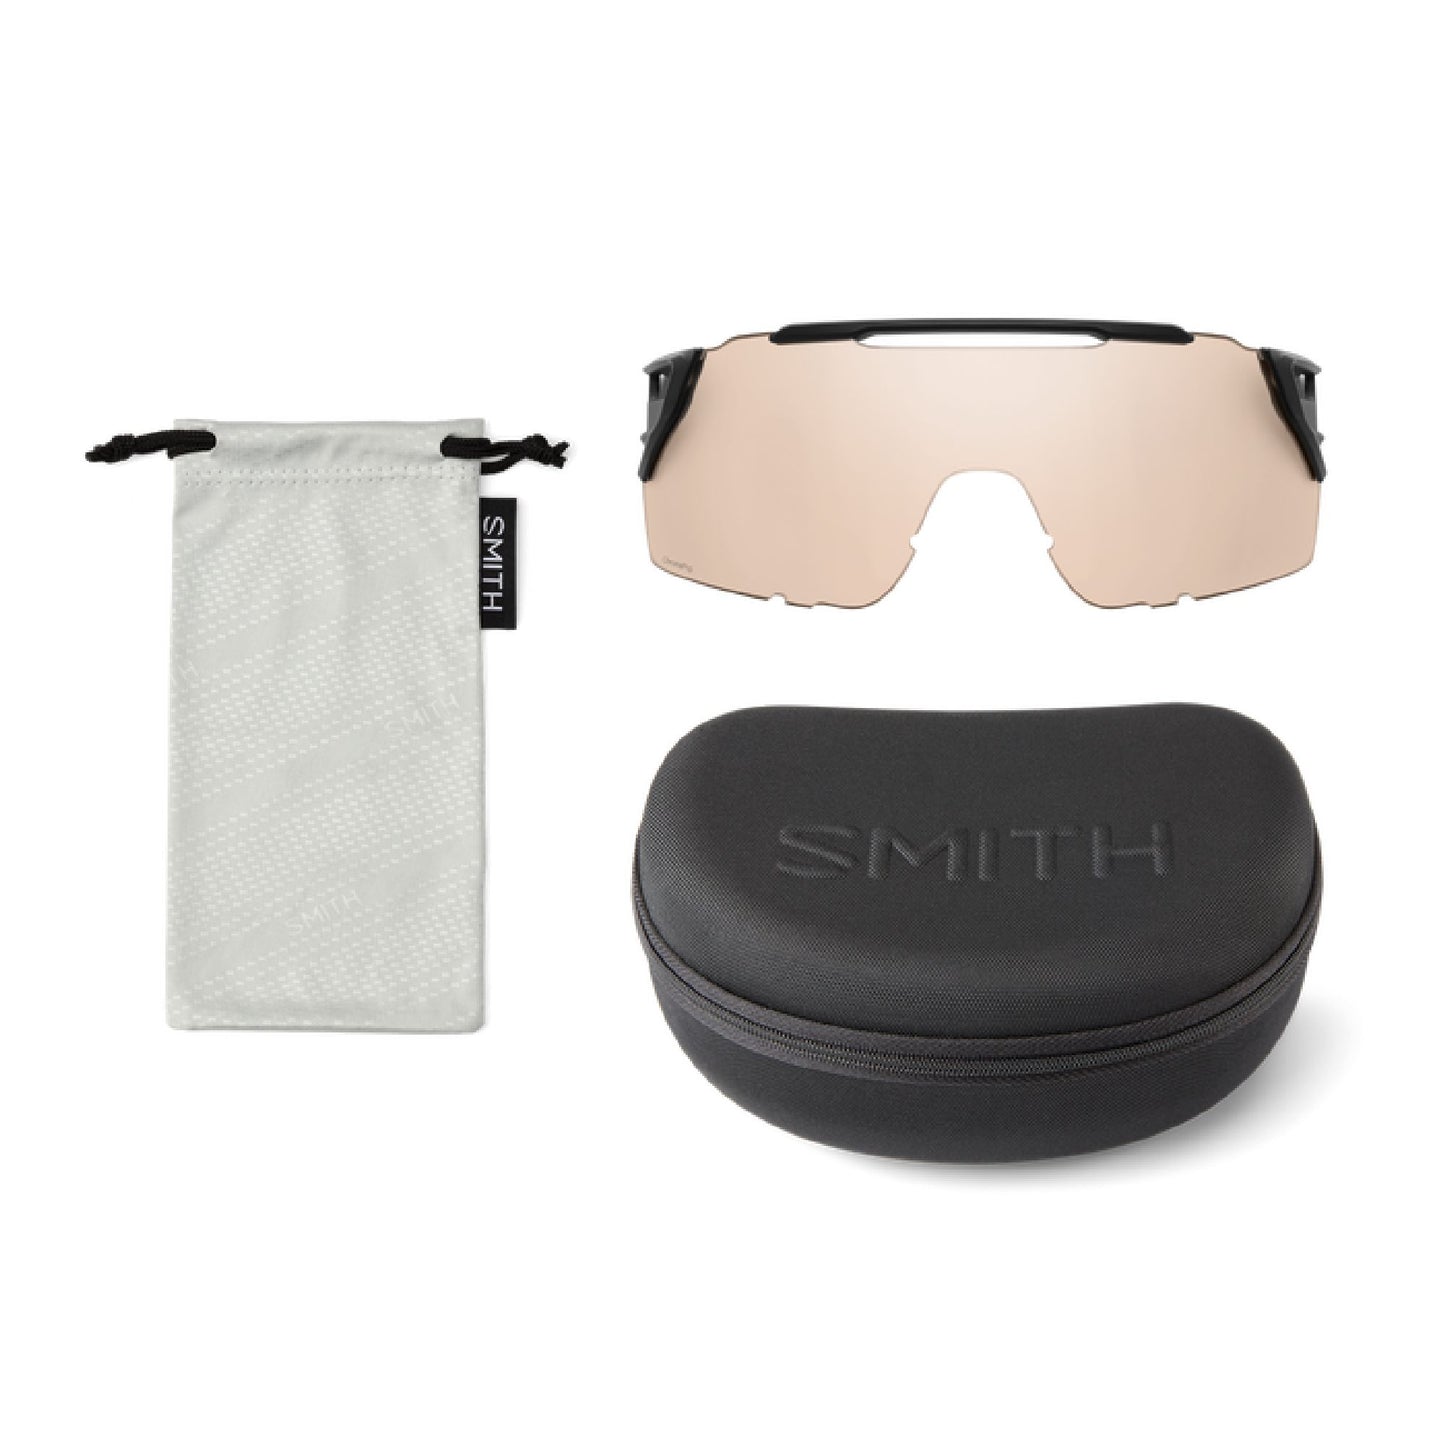 Smith Attack MAG MTB Sunglasses Matte White ChromaPop Black Sunglasses